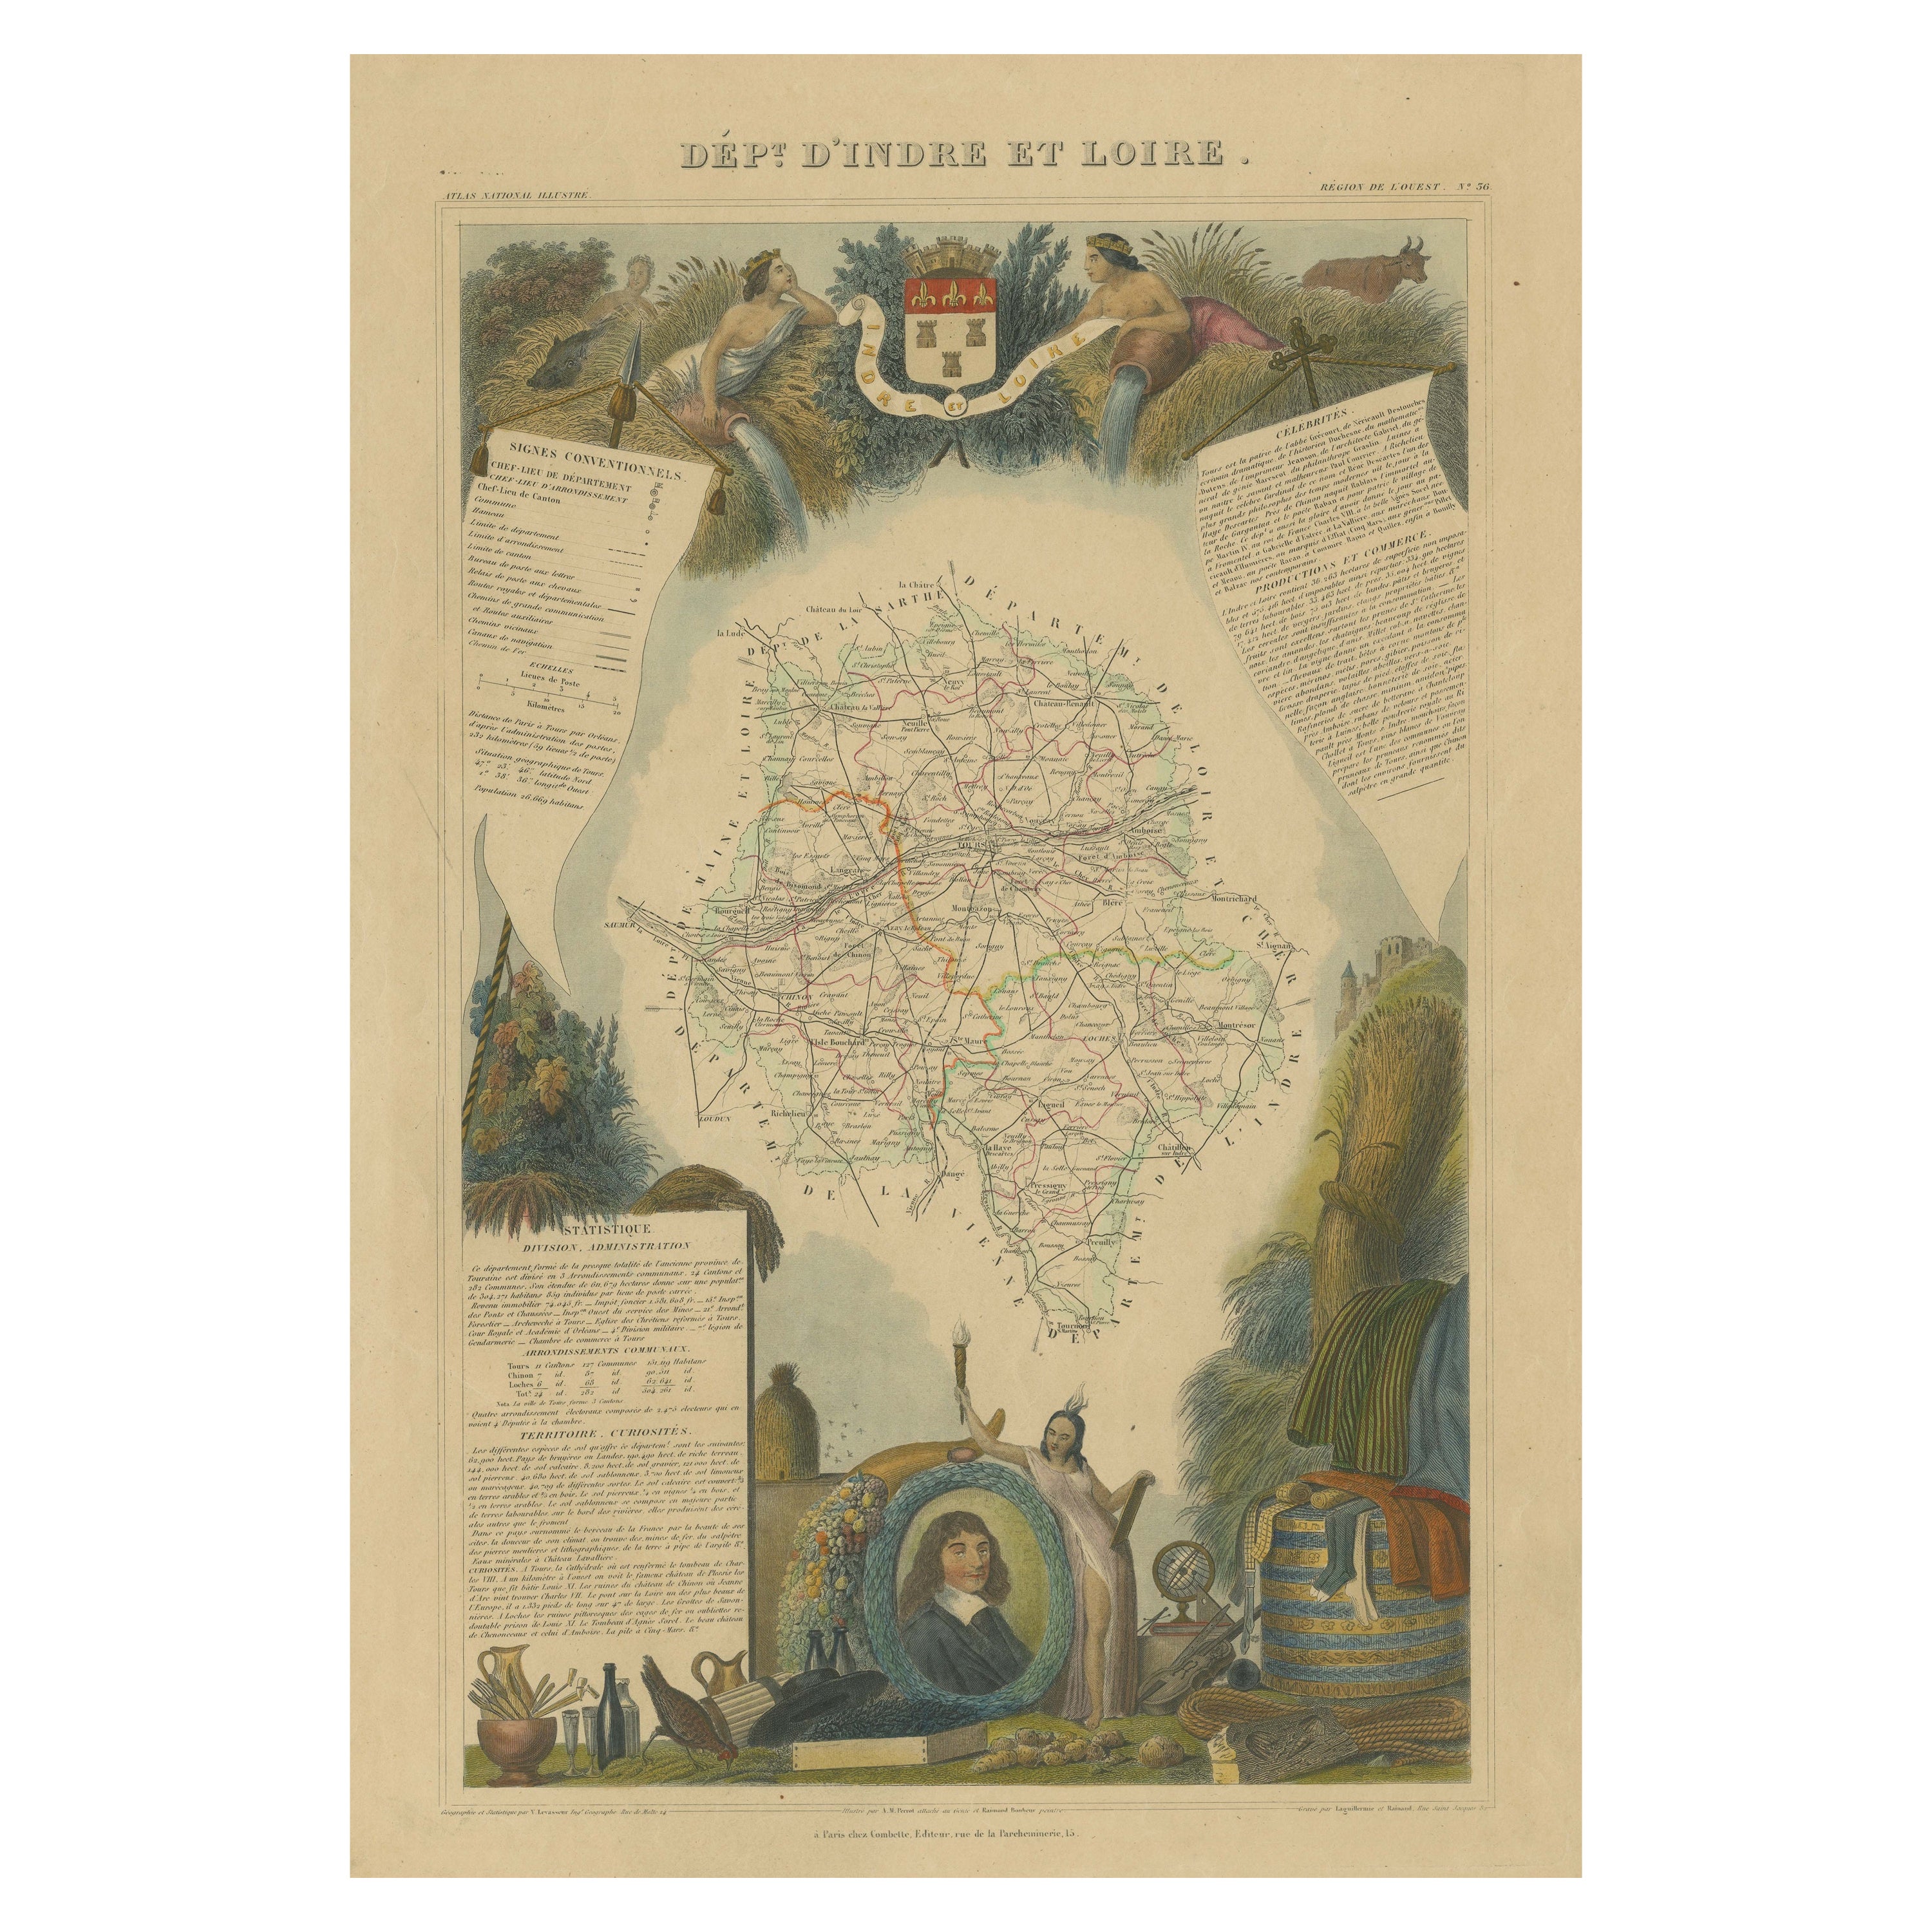 Handkolorierte antike Karte der Abteilung Indre und Loire, Frankreich